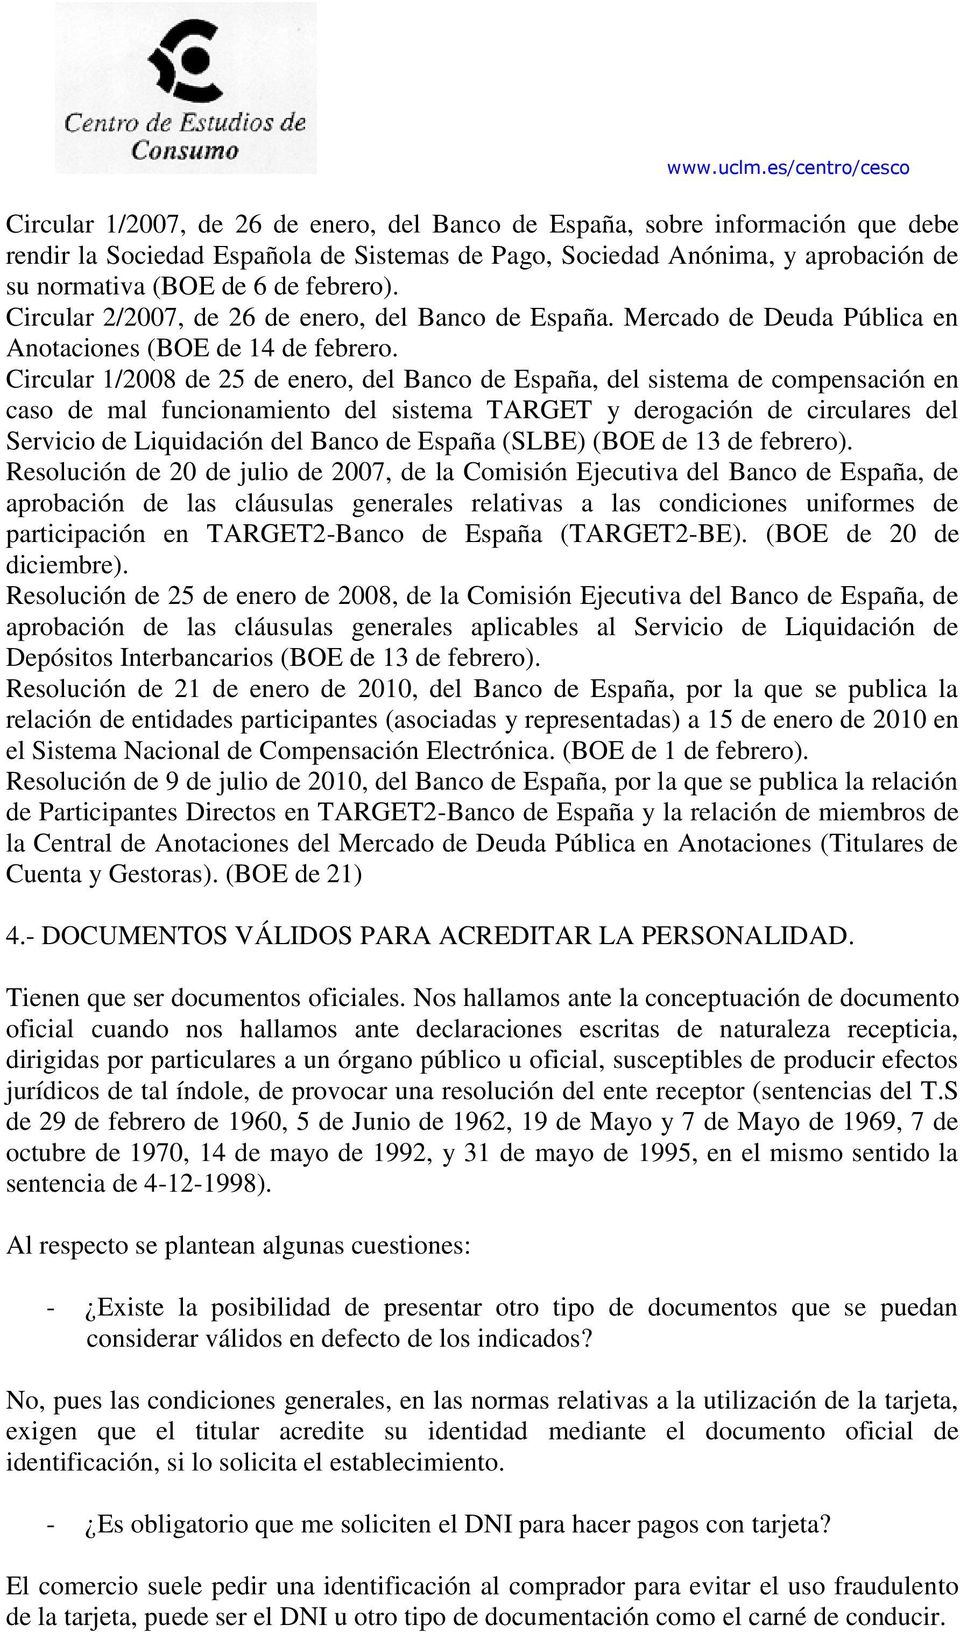 Circular 1/2008 de 25 de enero, del Banco de España, del sistema de compensación en caso de mal funcionamiento del sistema TARGET y derogación de circulares del Servicio de Liquidación del Banco de